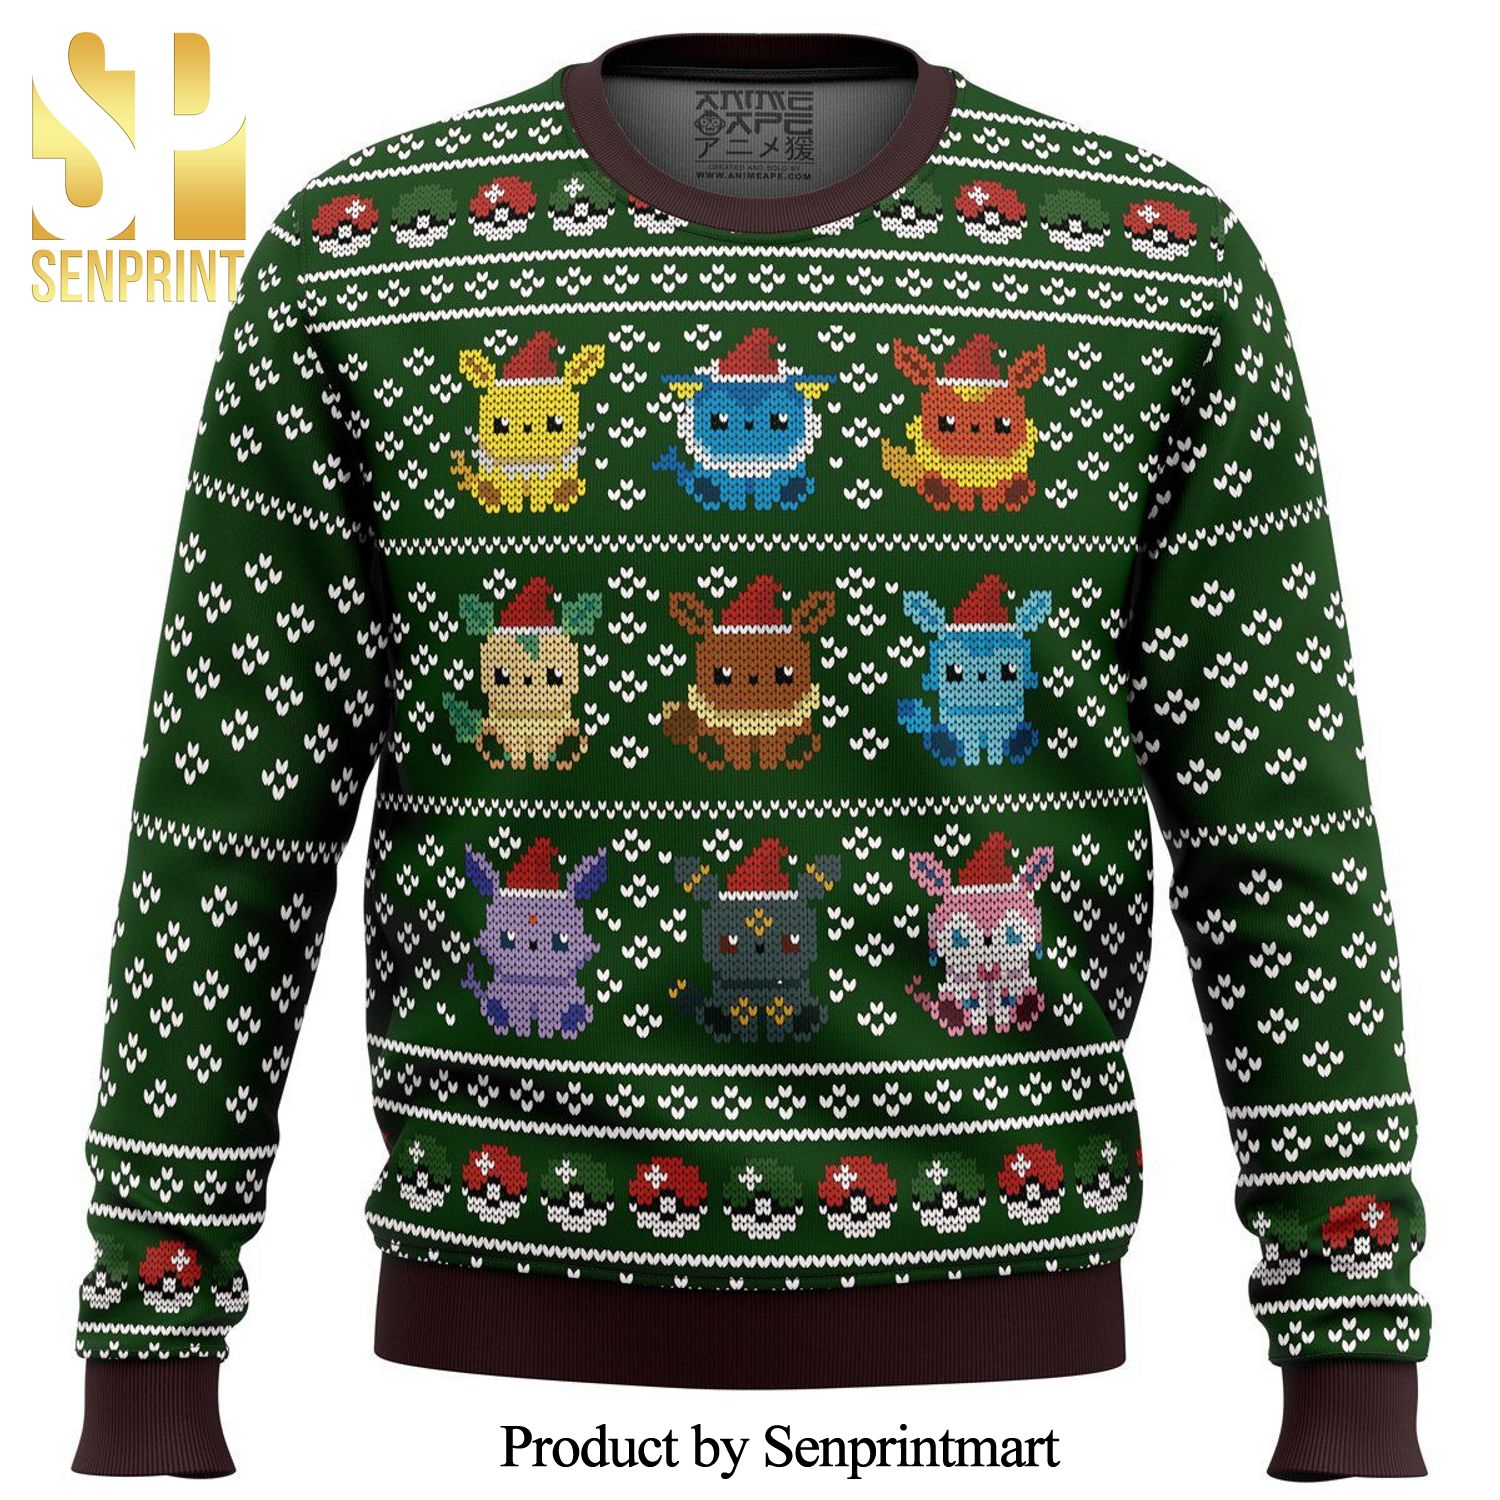 Pokemon Eevee Eeveelutions Premium Manga Anime Knitted Ugly Christmas Sweater